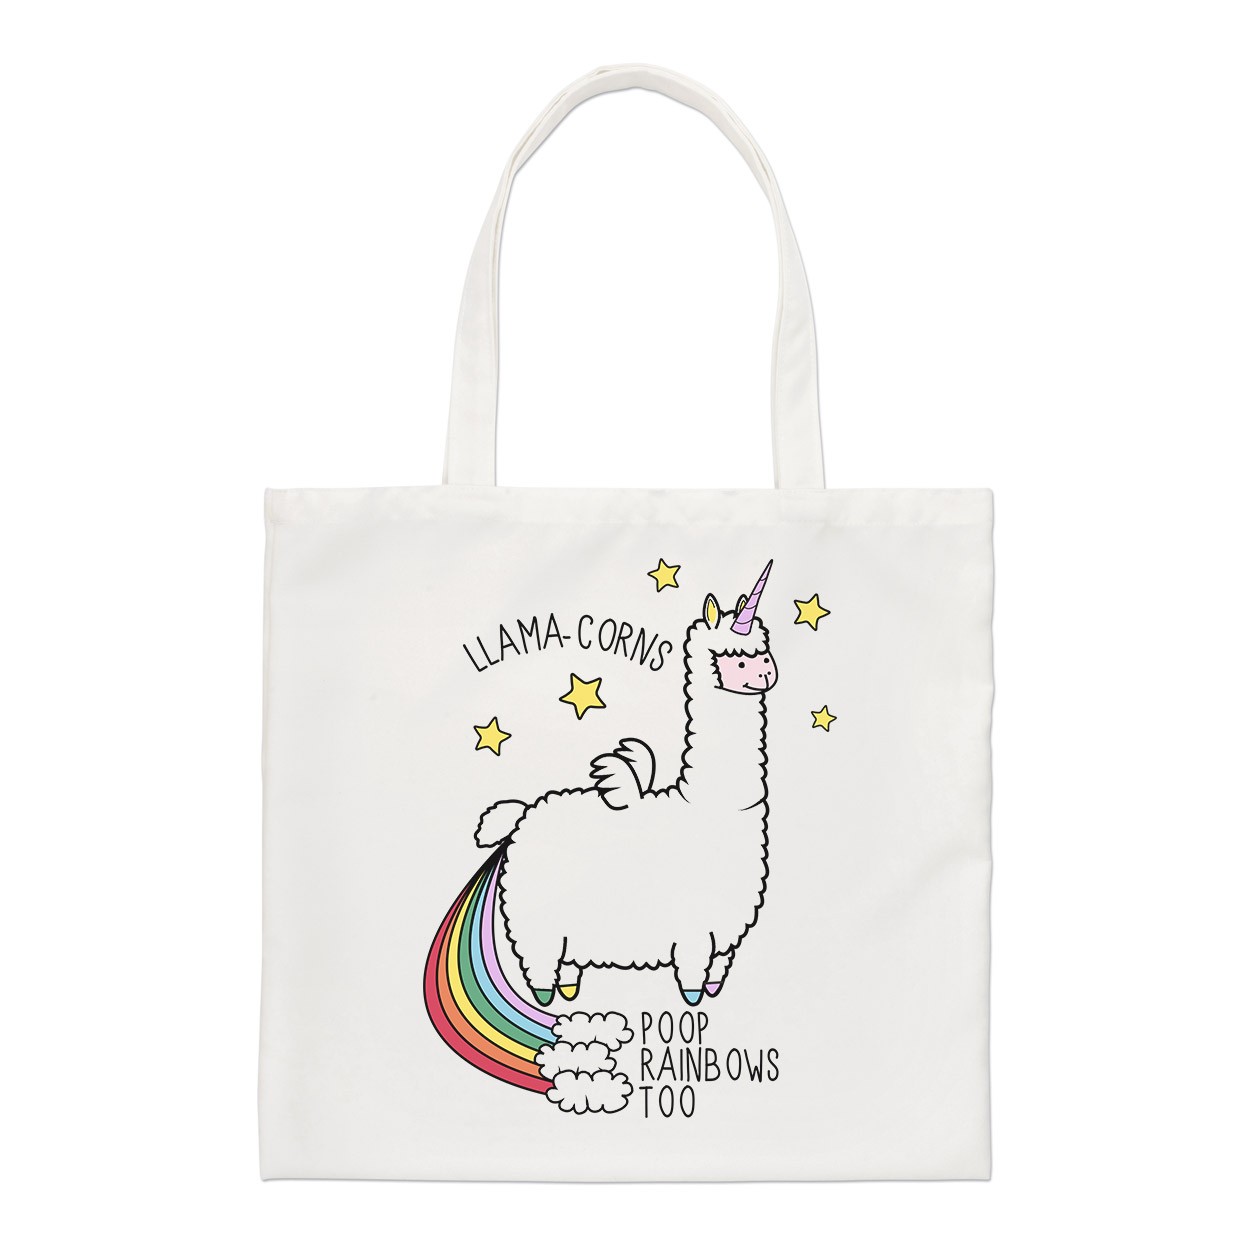 Llama-corns Poop Rainbows Too Regular Tote Bag